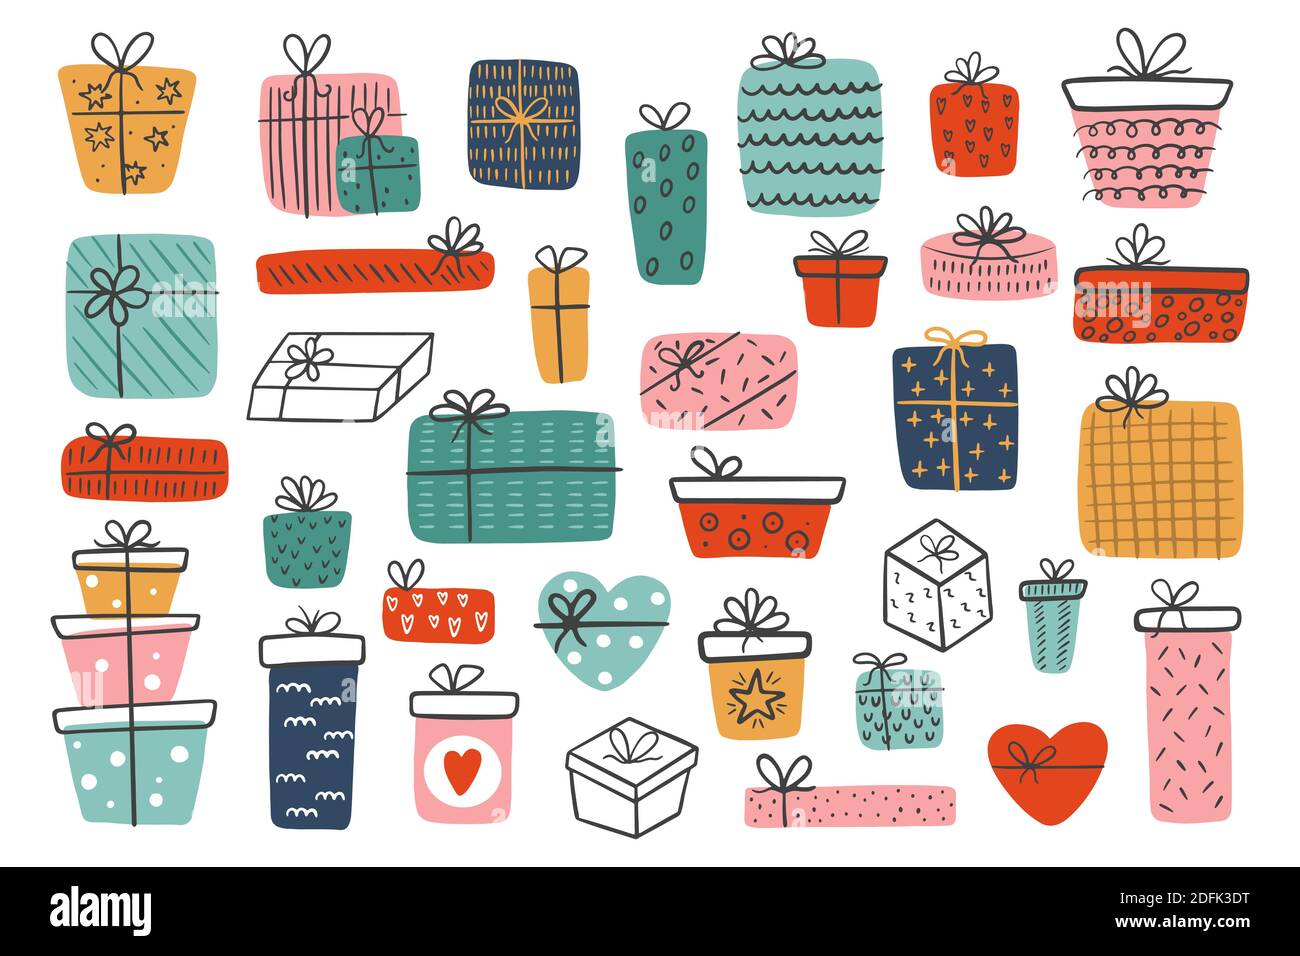 Große Reihe von handgezeichneten verschiedenen Geschenk-Boxen isoliert auf einem weißen Hintergrund. Bunte Geschenke zum Valentinstag, Weihnachten, Neujahr, Geburtstag. Stock Vektor